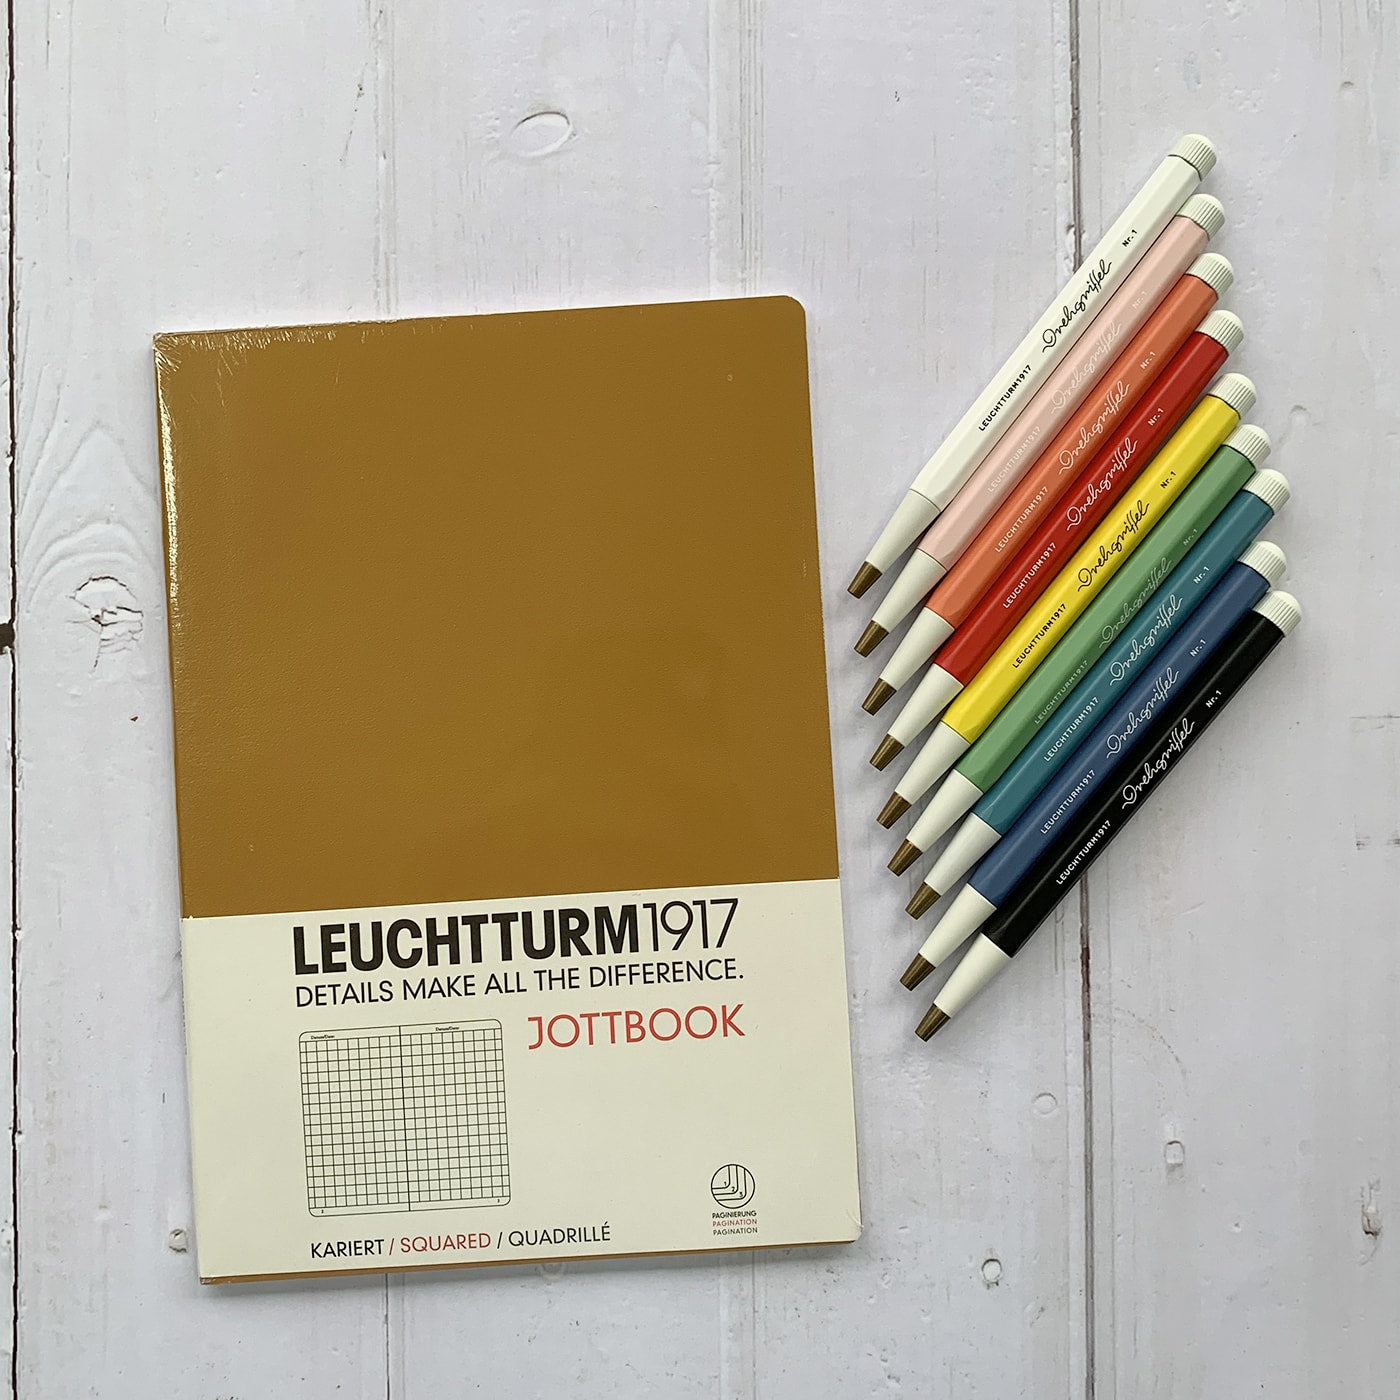 Leuchtturm1917 Drehgriffel Mechanical Pencil Review - the paper kind